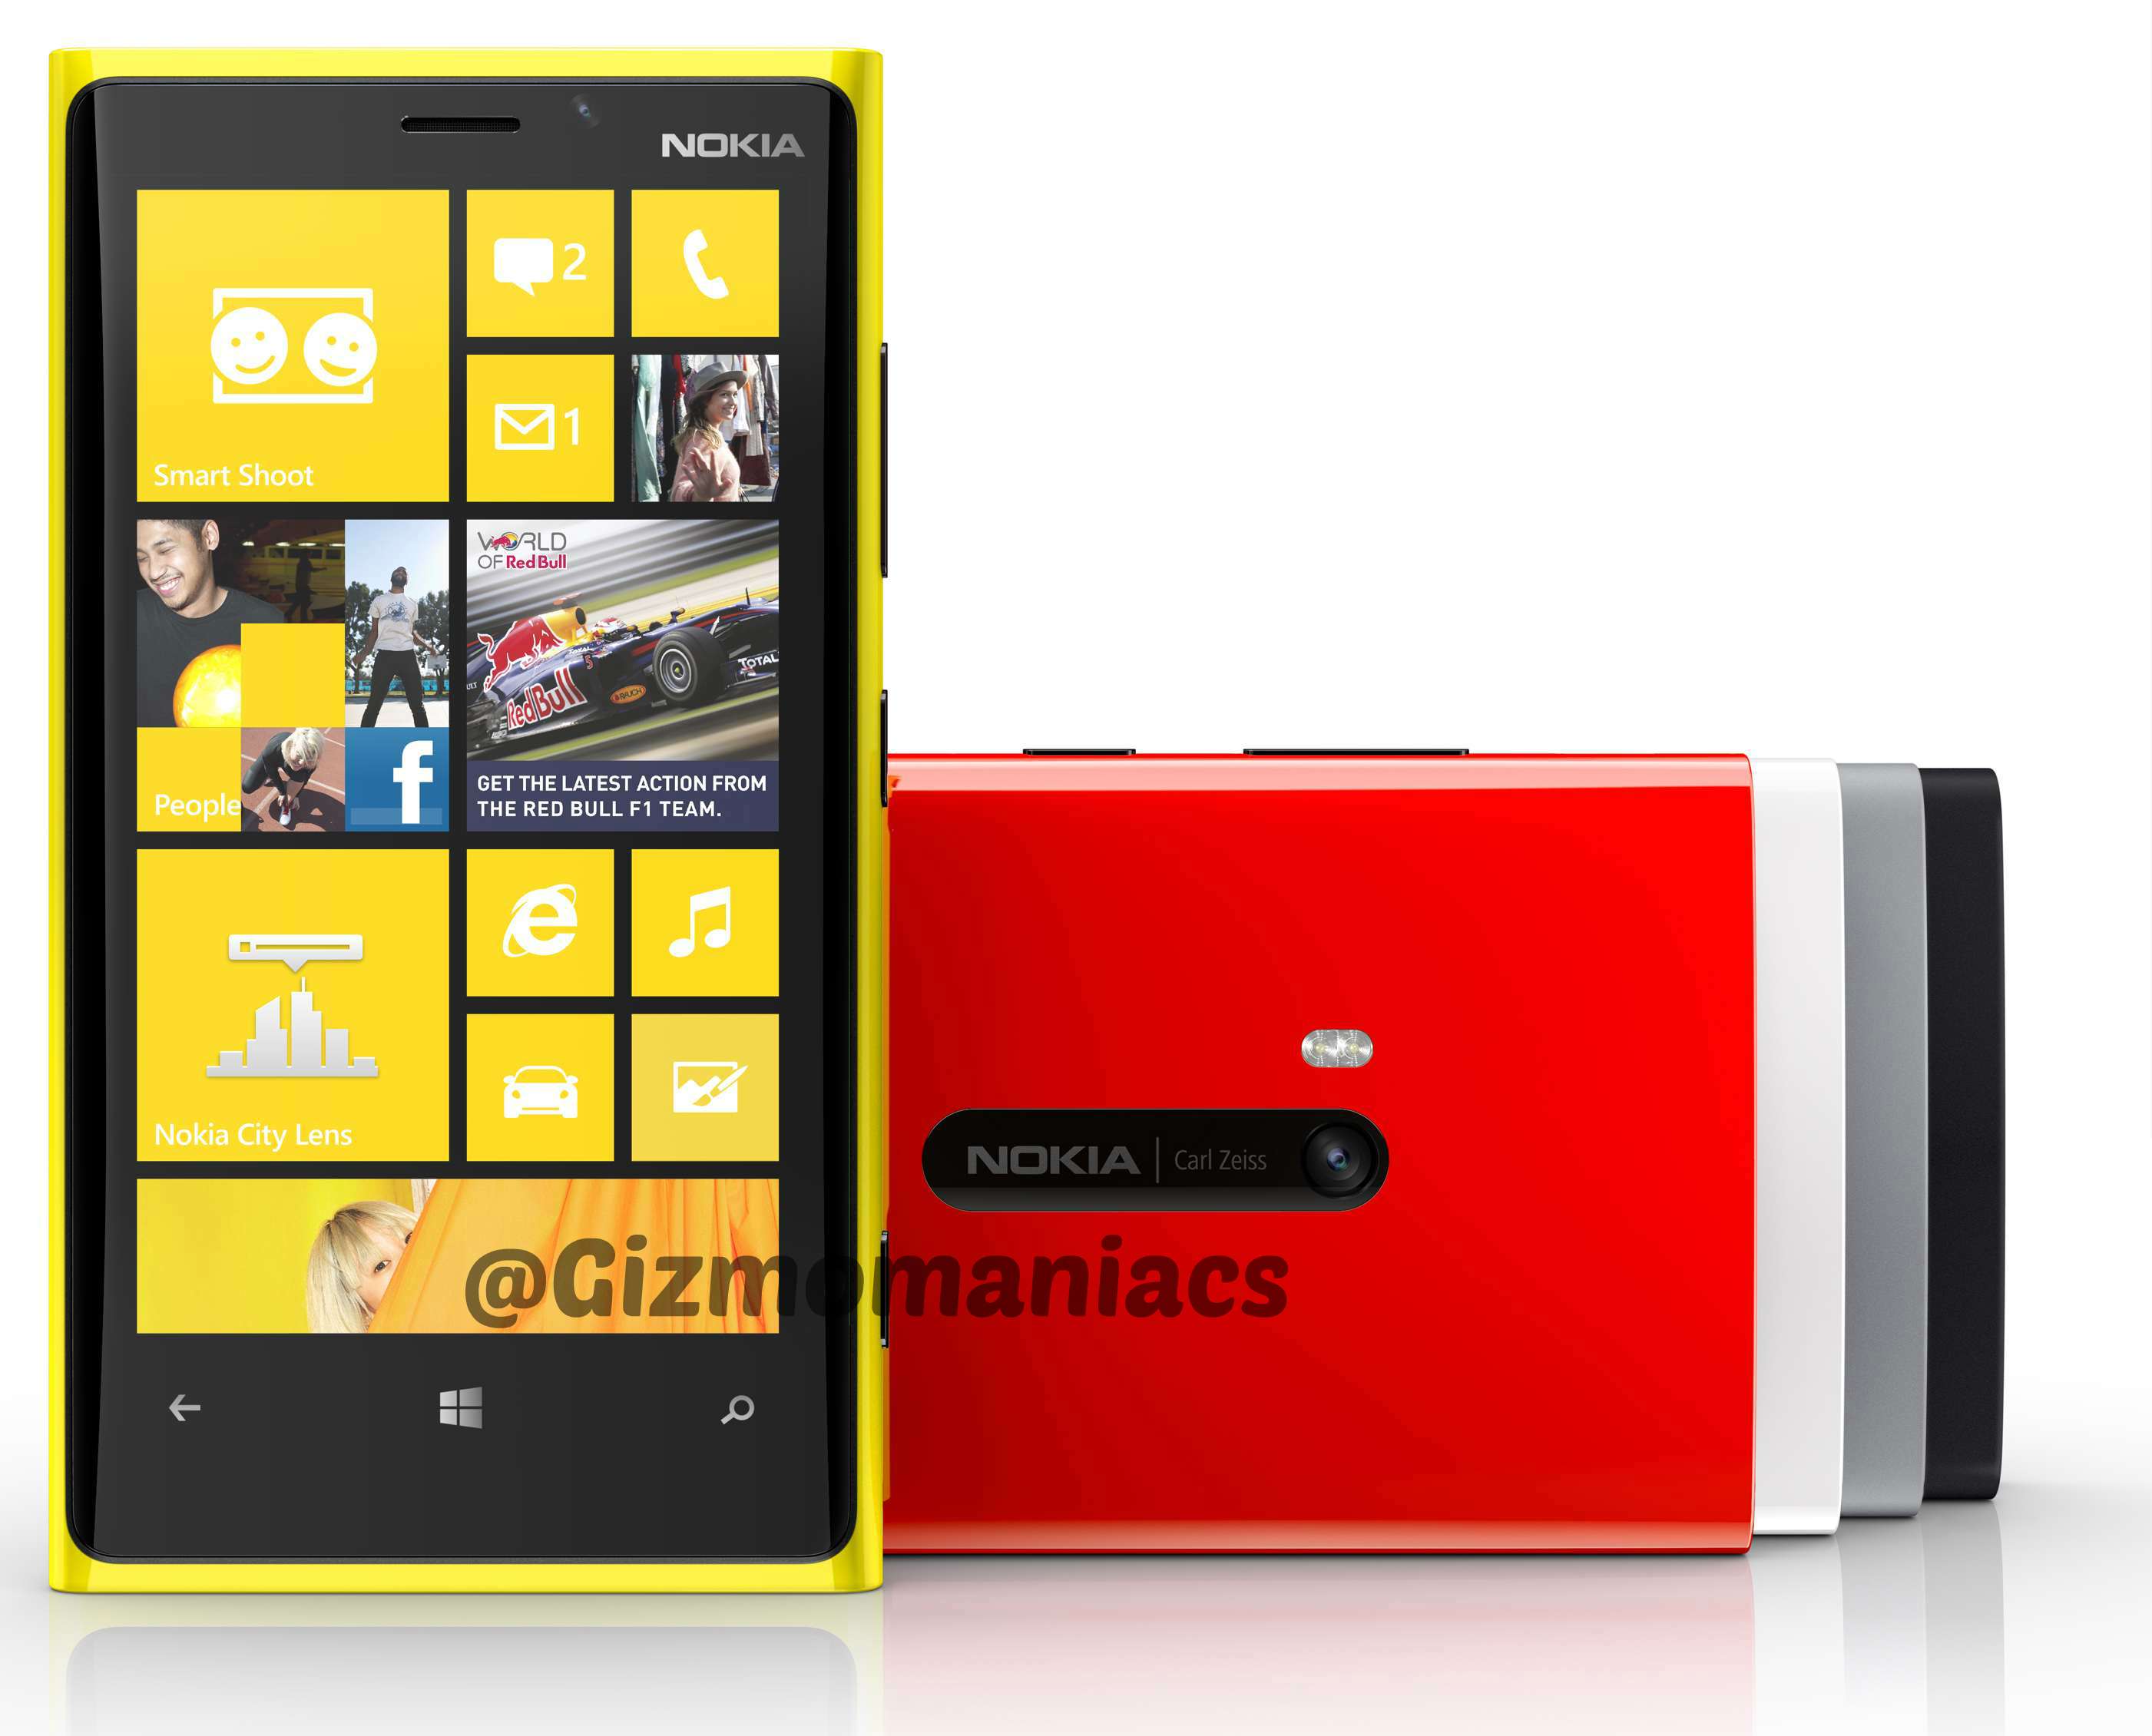 Nokia Lumia 920 with specs - GizmoManiacs